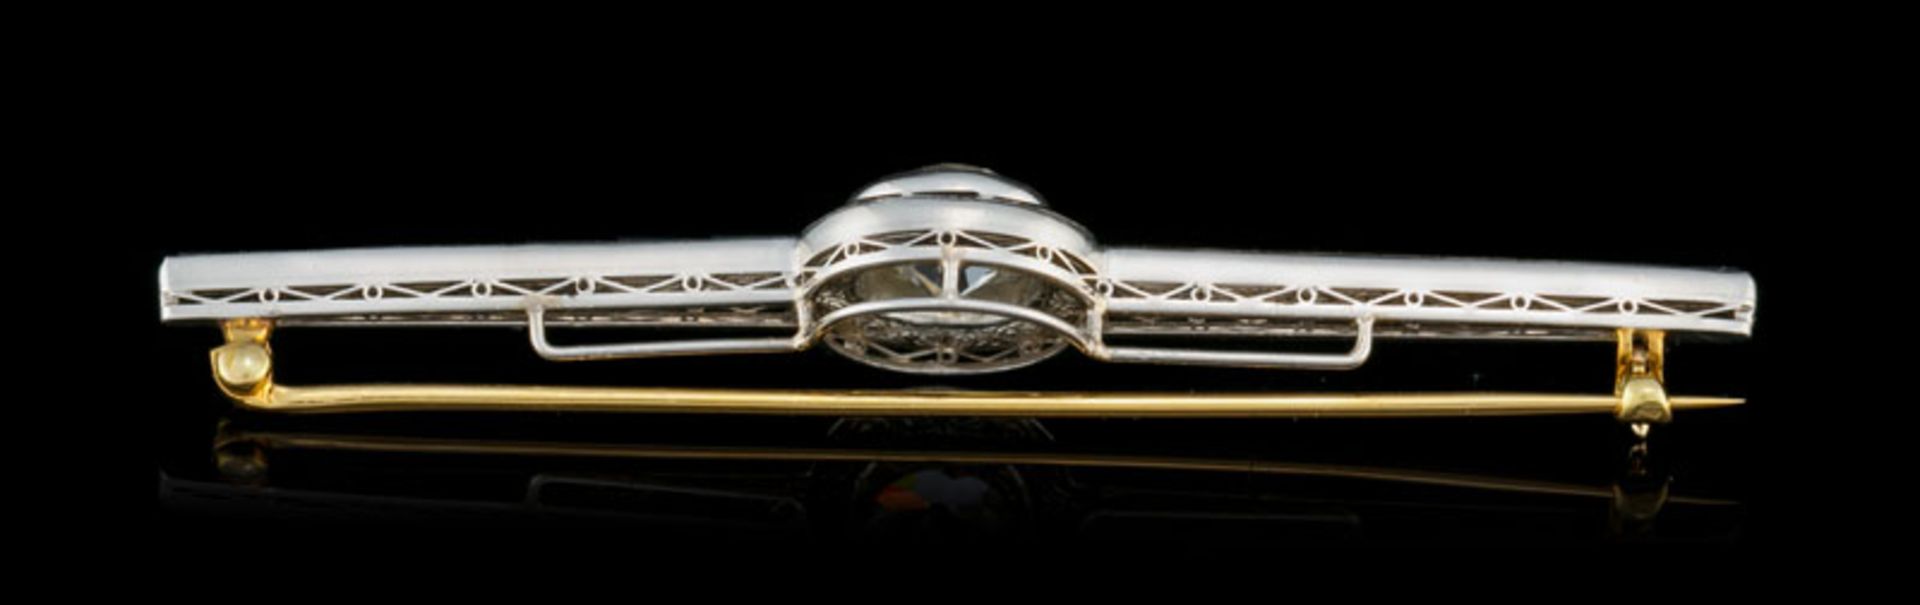 Broche barrette Art Déco 2 ors 750 sertie d'une ligne d'éléments calibrés en onyx entourant un diama - Image 4 of 5